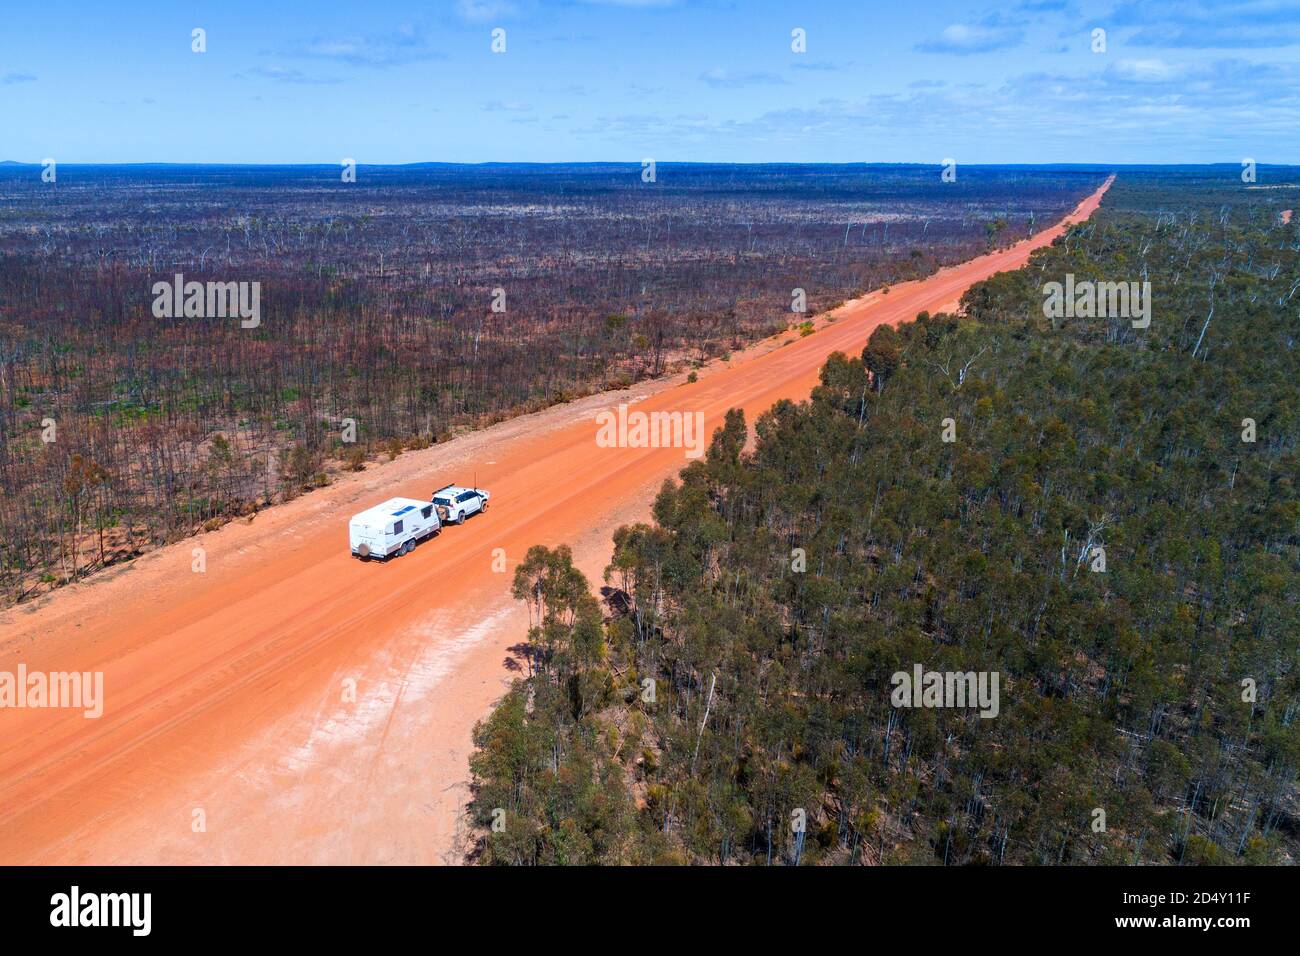 Wohnwagen, Wohnmobil, das mit dem Auto abgeschleppt wird, auf staubiger Outback-Straße, aus der Luft gesehen, Hyden Noresman Road, Western Australia Stockfoto